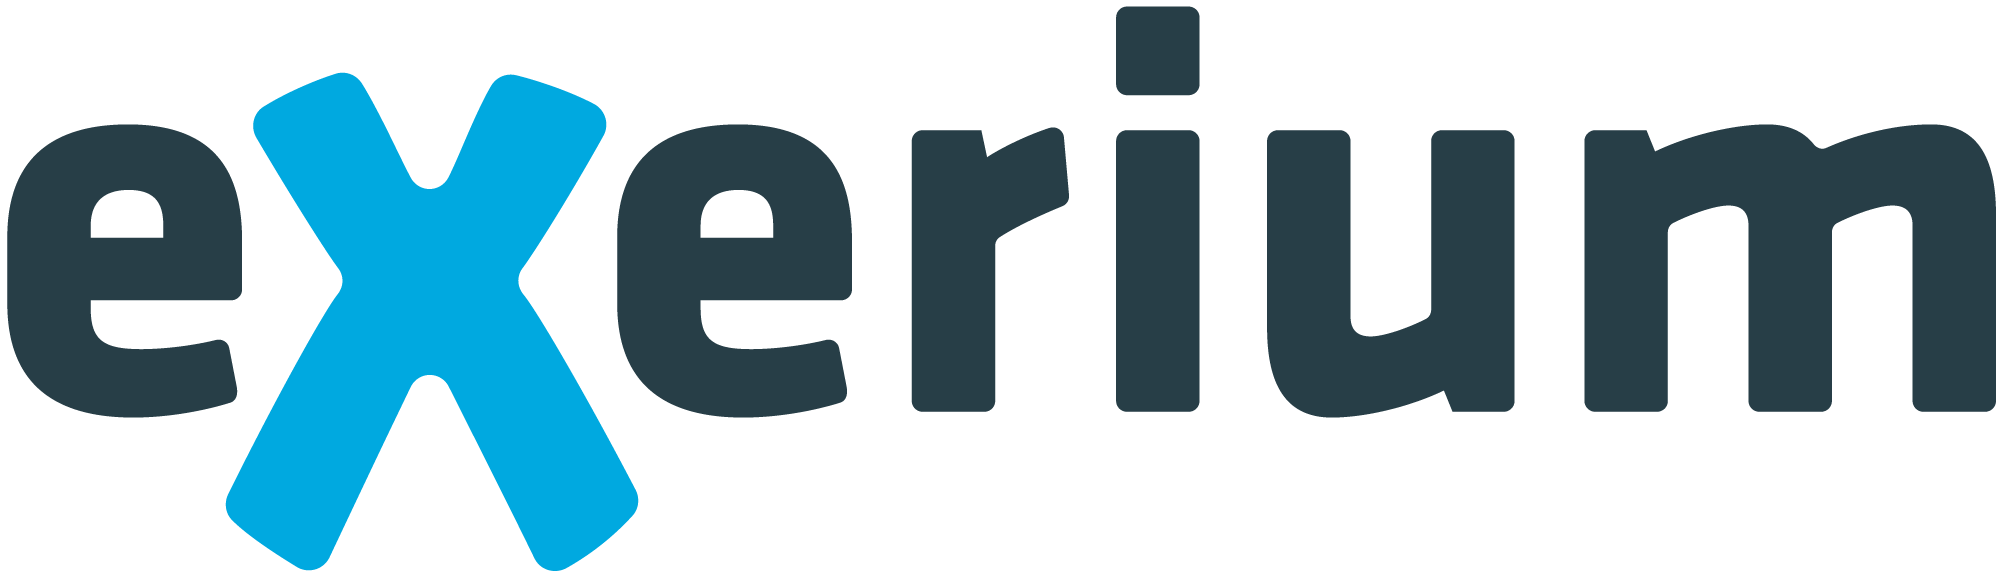 Exerium logo